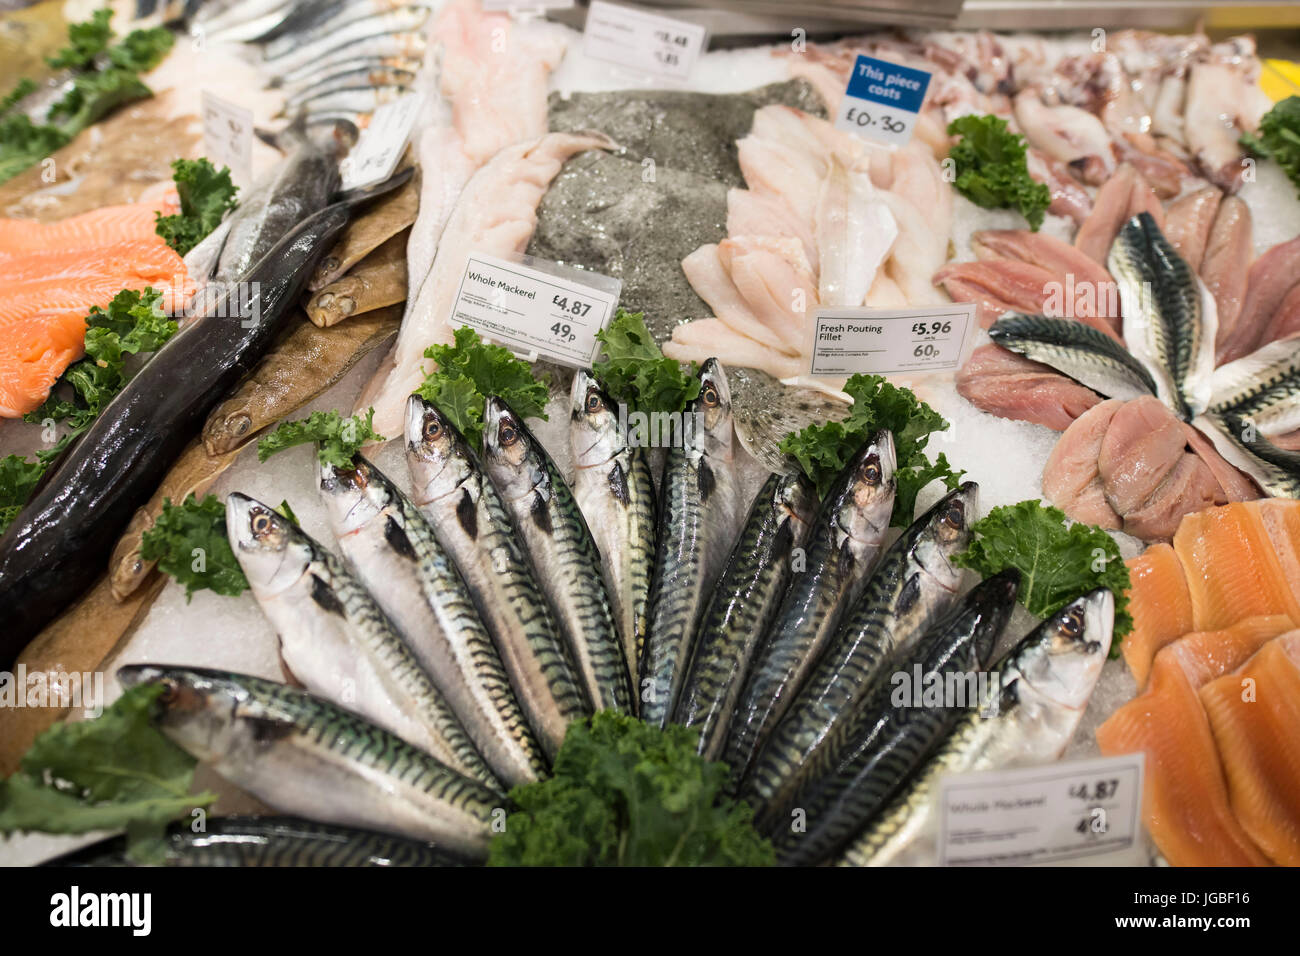 Pesce fresco sul display per la vendita in un supermercato pescivendoli store. Foto Stock